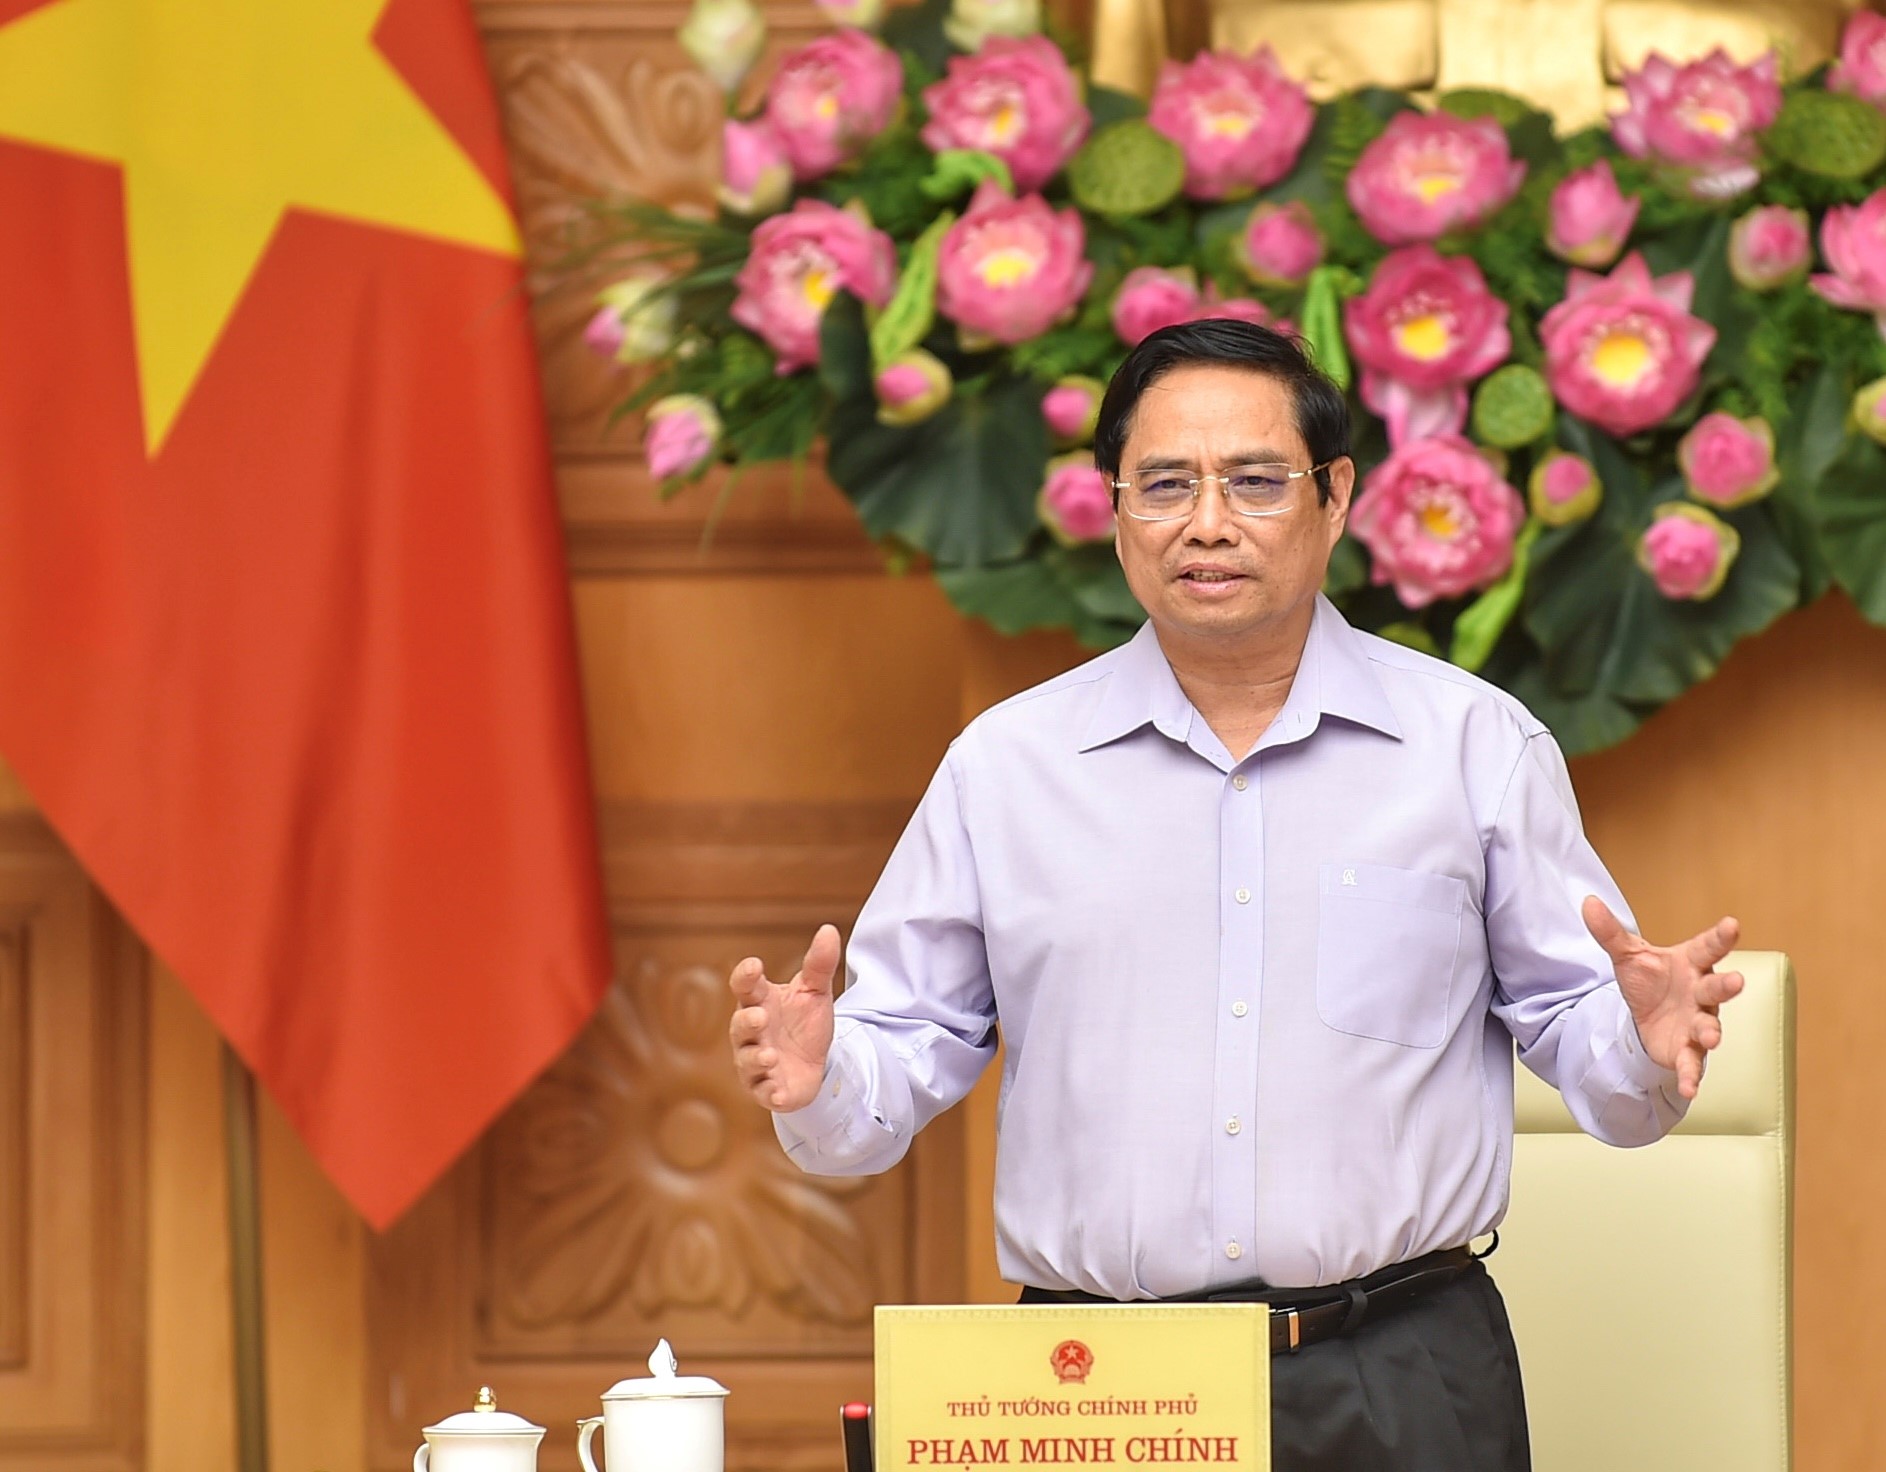 Thủ tướng nêu rõ, Chính phủ Việt Nam luôn sẵn sàng tạo điều kiện và đồng hành để các doanh nghiệp nước ngoài, trong đó có doanh nghiệp Hàn Quốc đầu tư, kinh doanh thuận lợi. Ảnh VGP/Nhật Bắc